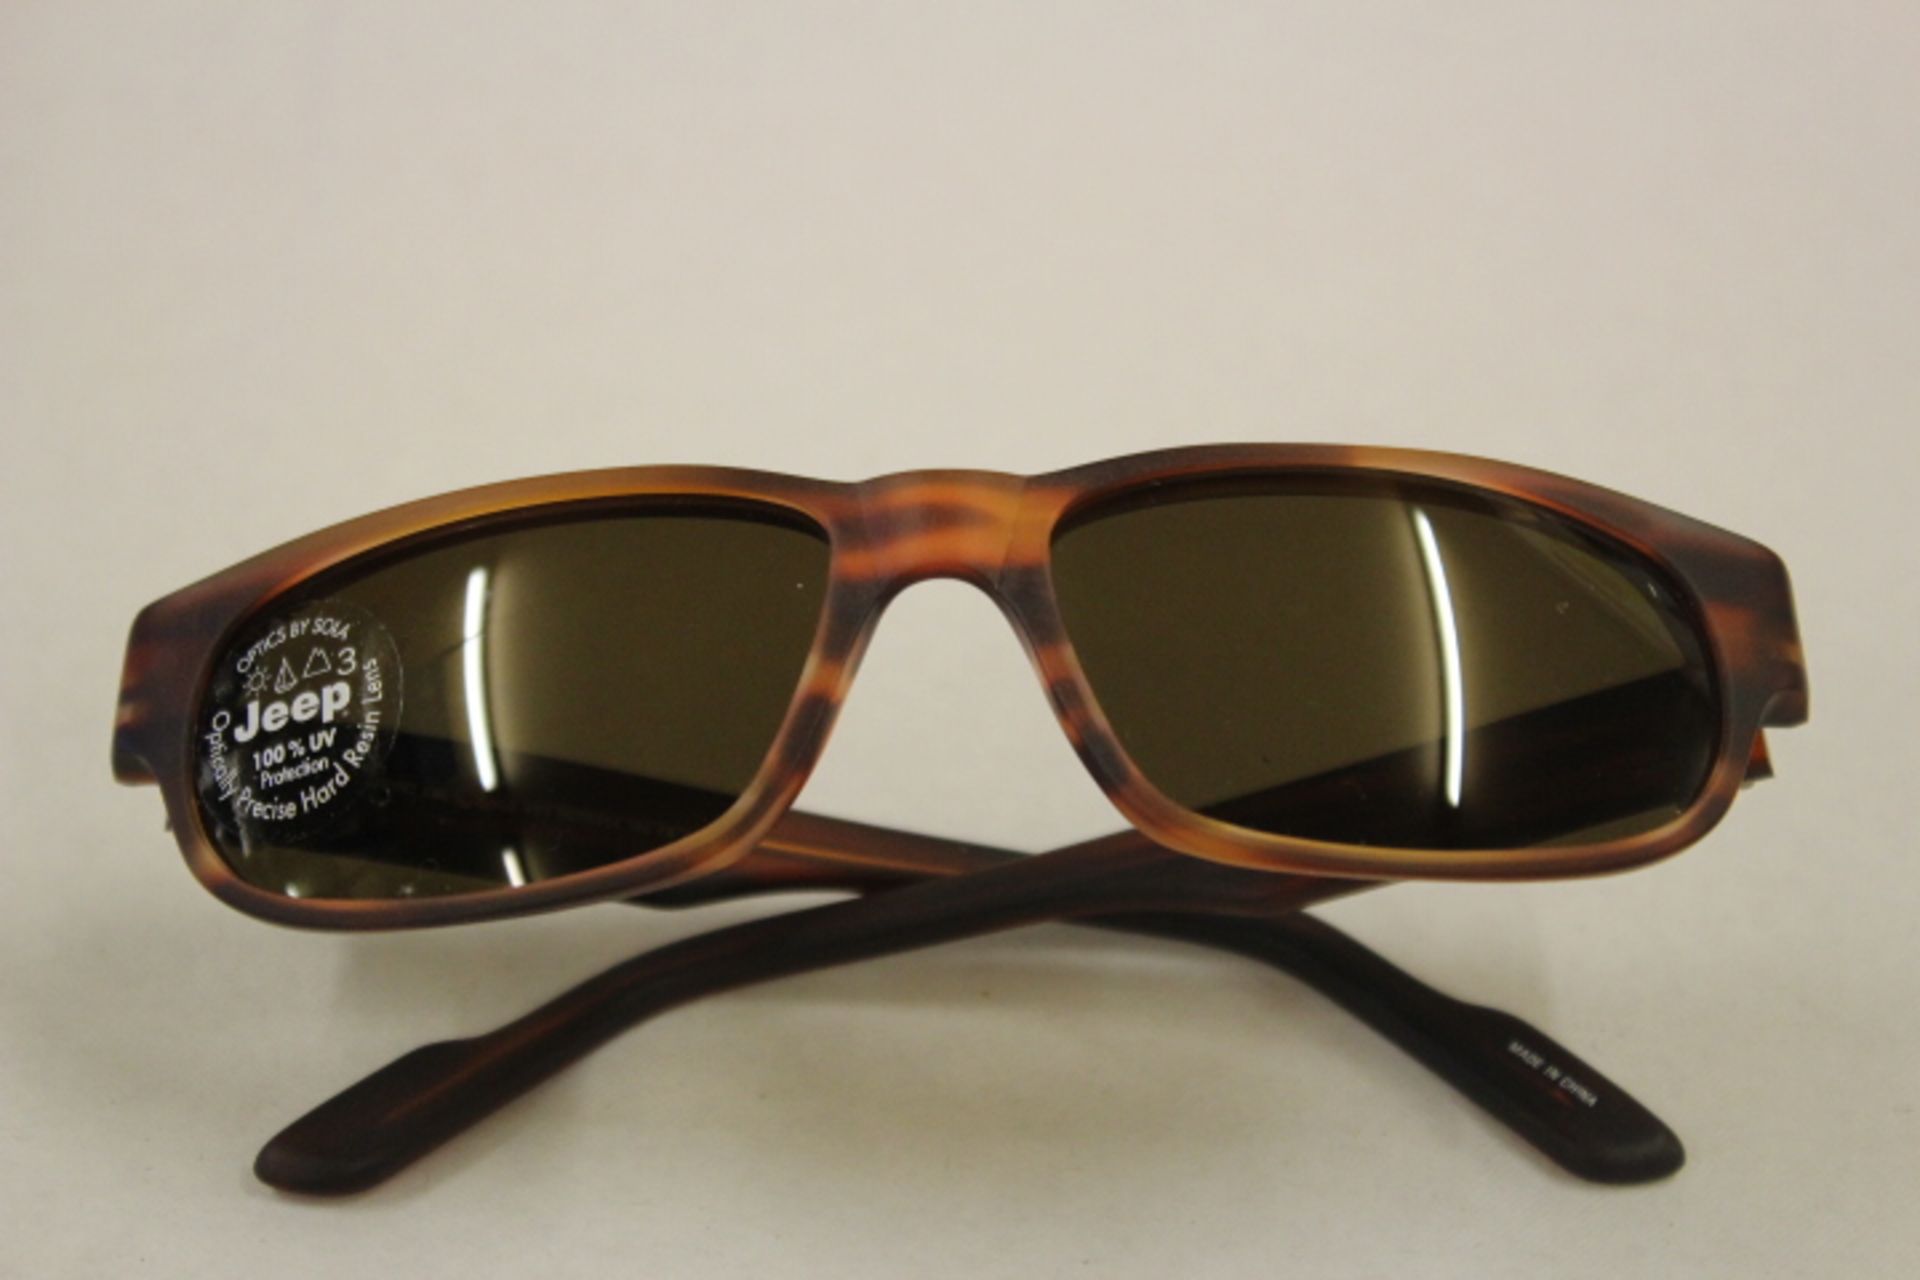 V Brand New Pair Jeep Tortoise Shell Effect Framed Sunglasses In Case